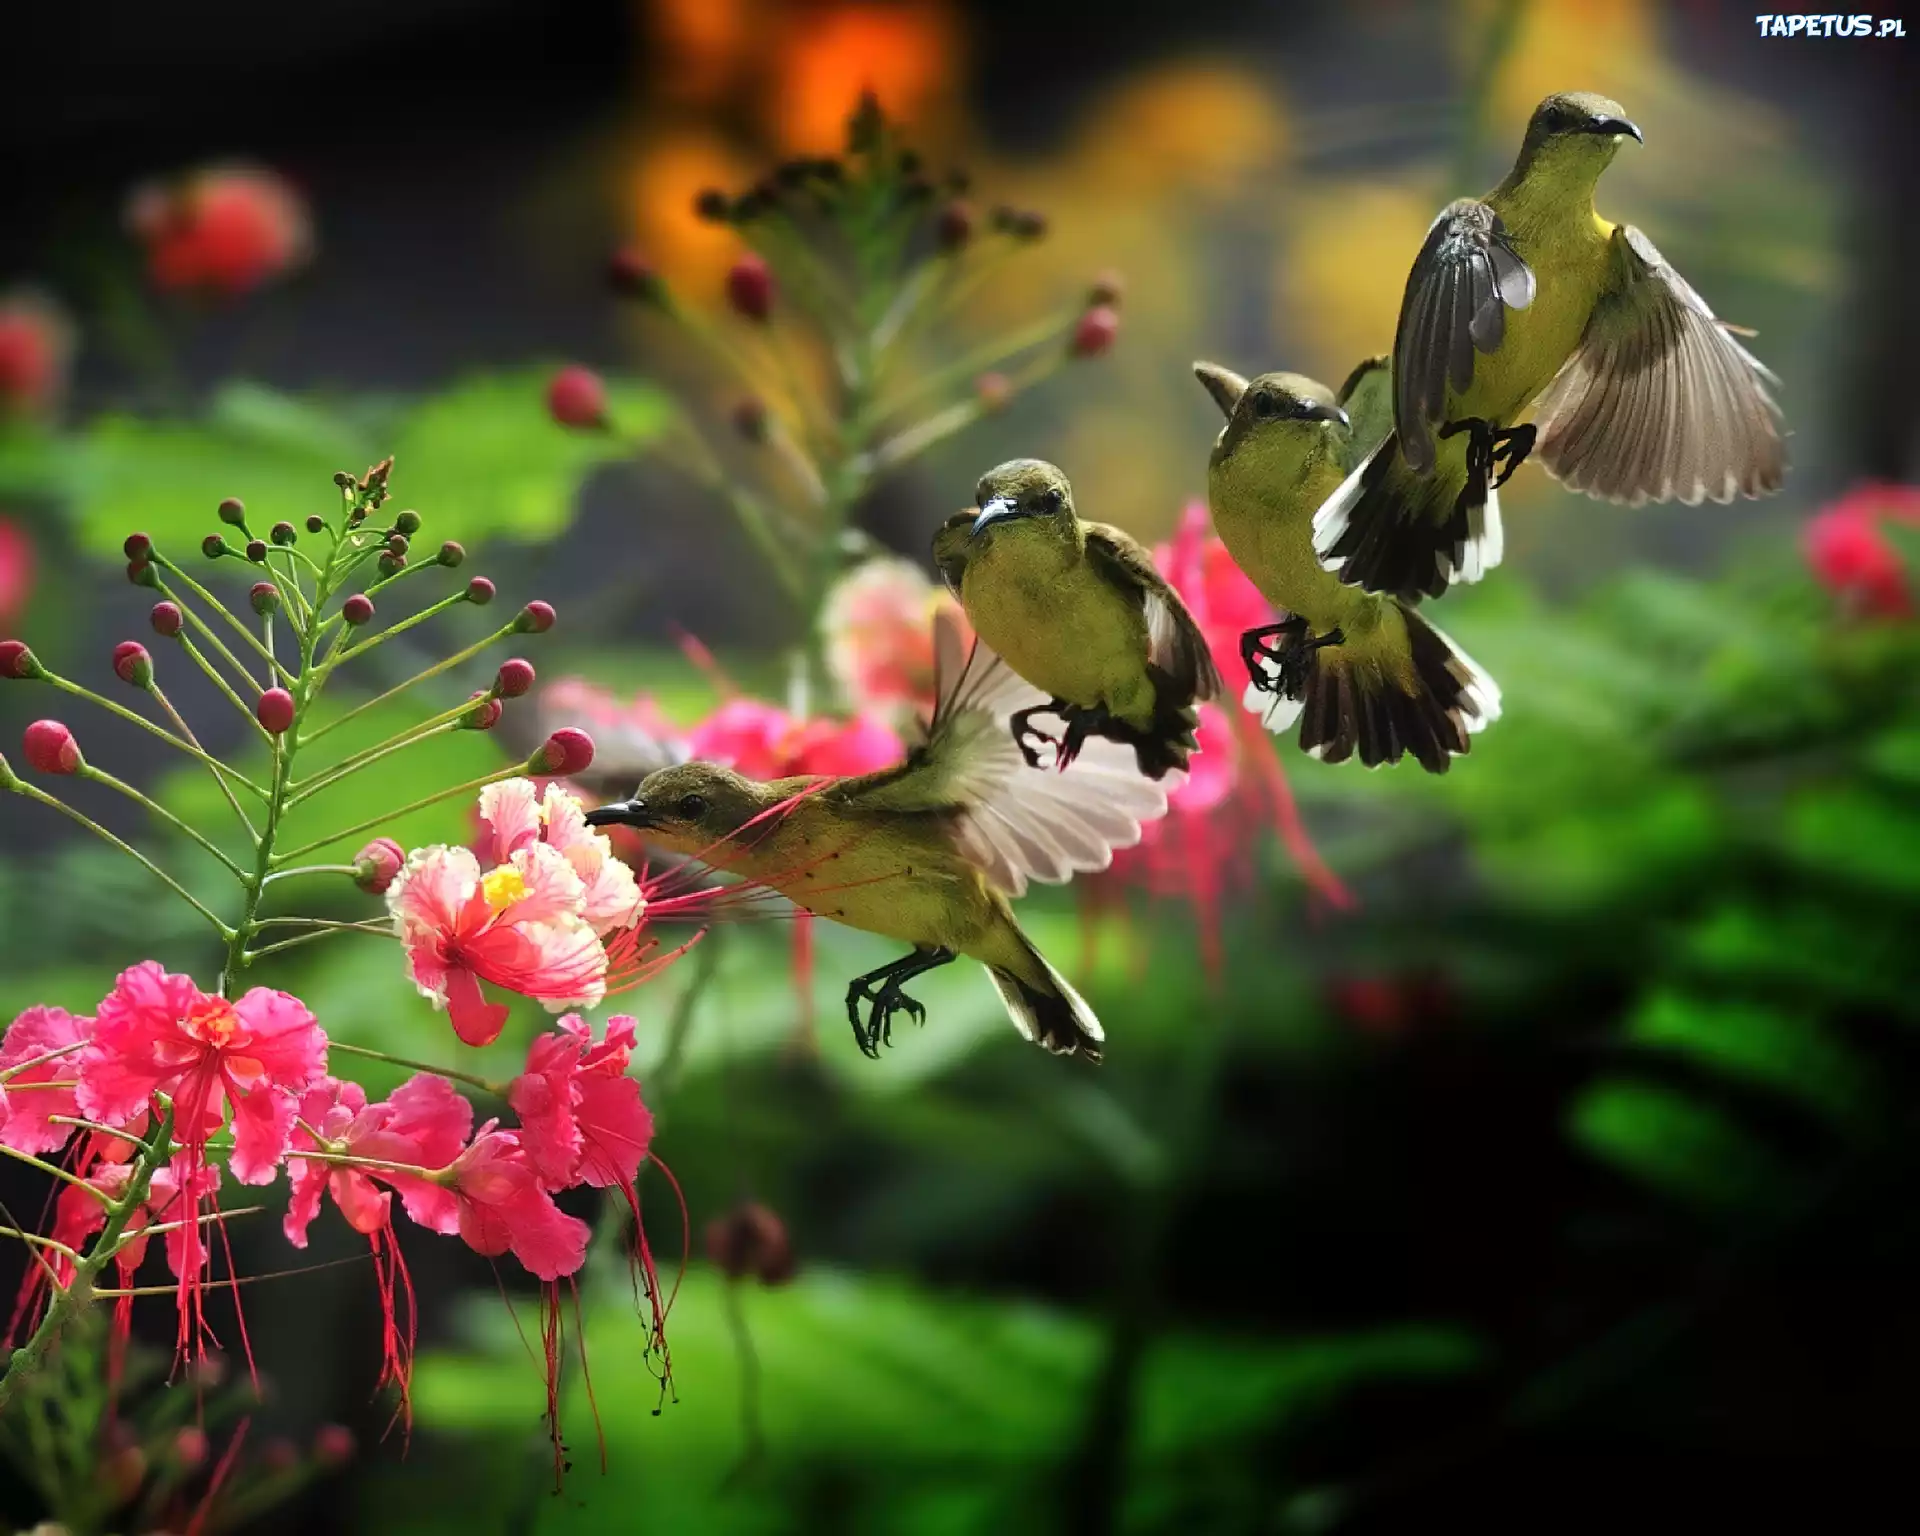 Мелодии на телефон в мире животных. Райские птицы. Красивые птицы. Красивые цветы и птицы. Красивая природа с птичками.